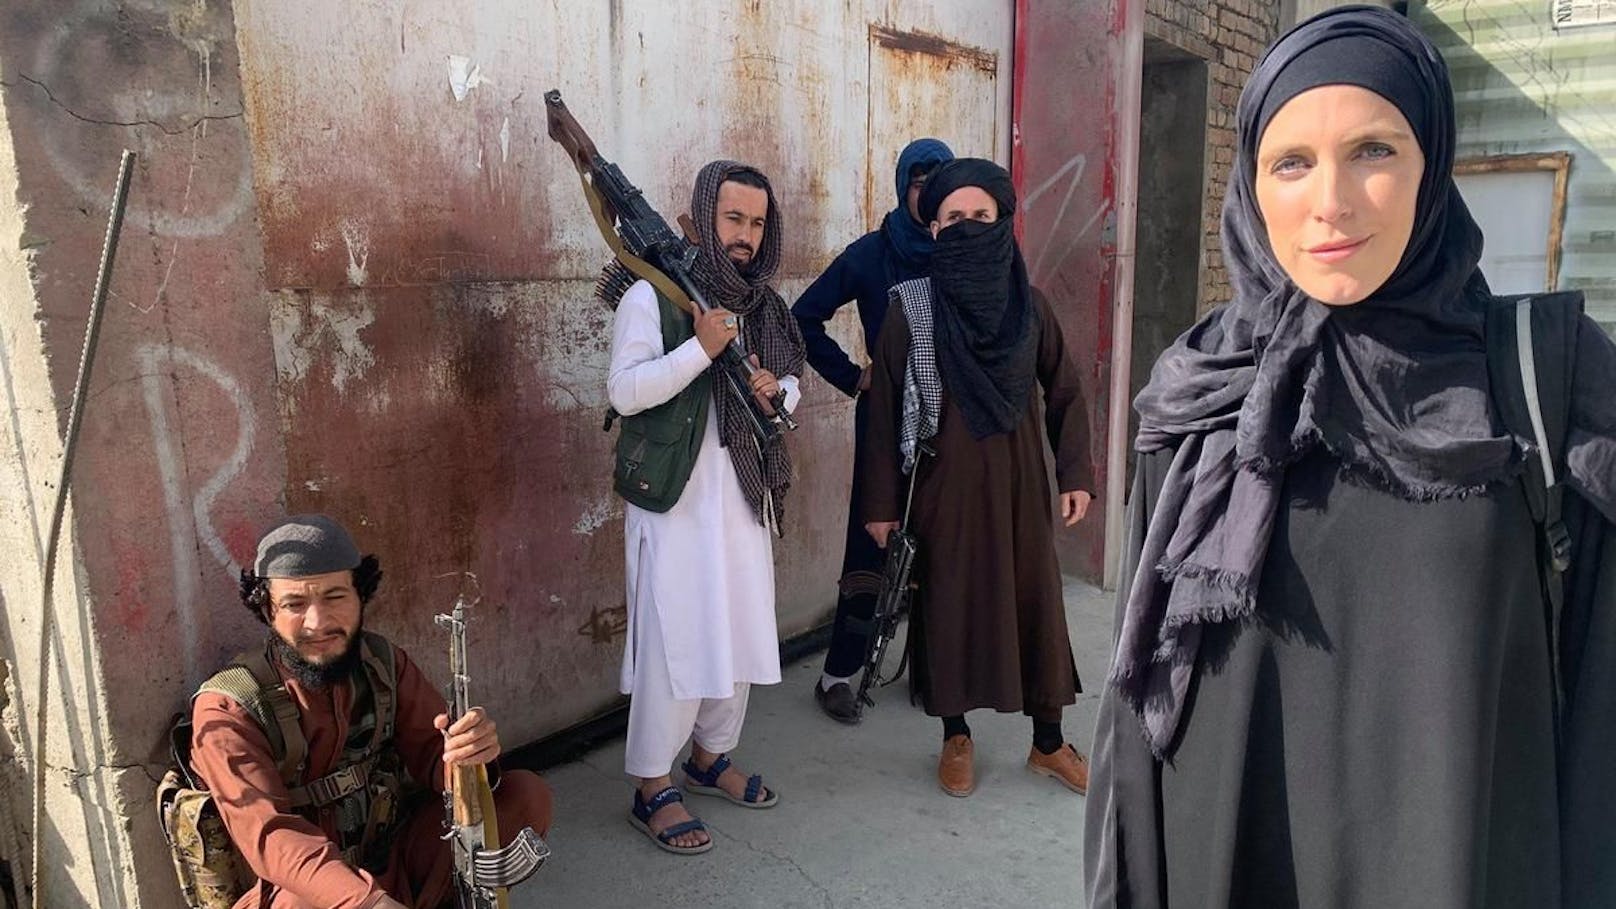 US-Journalistin Clarissa Ward berichtet für den Sender CNN live aus der afghanischen Hauptstadt. Am Montag tritt sie verhüllt im Tschador vor die Kamera. 